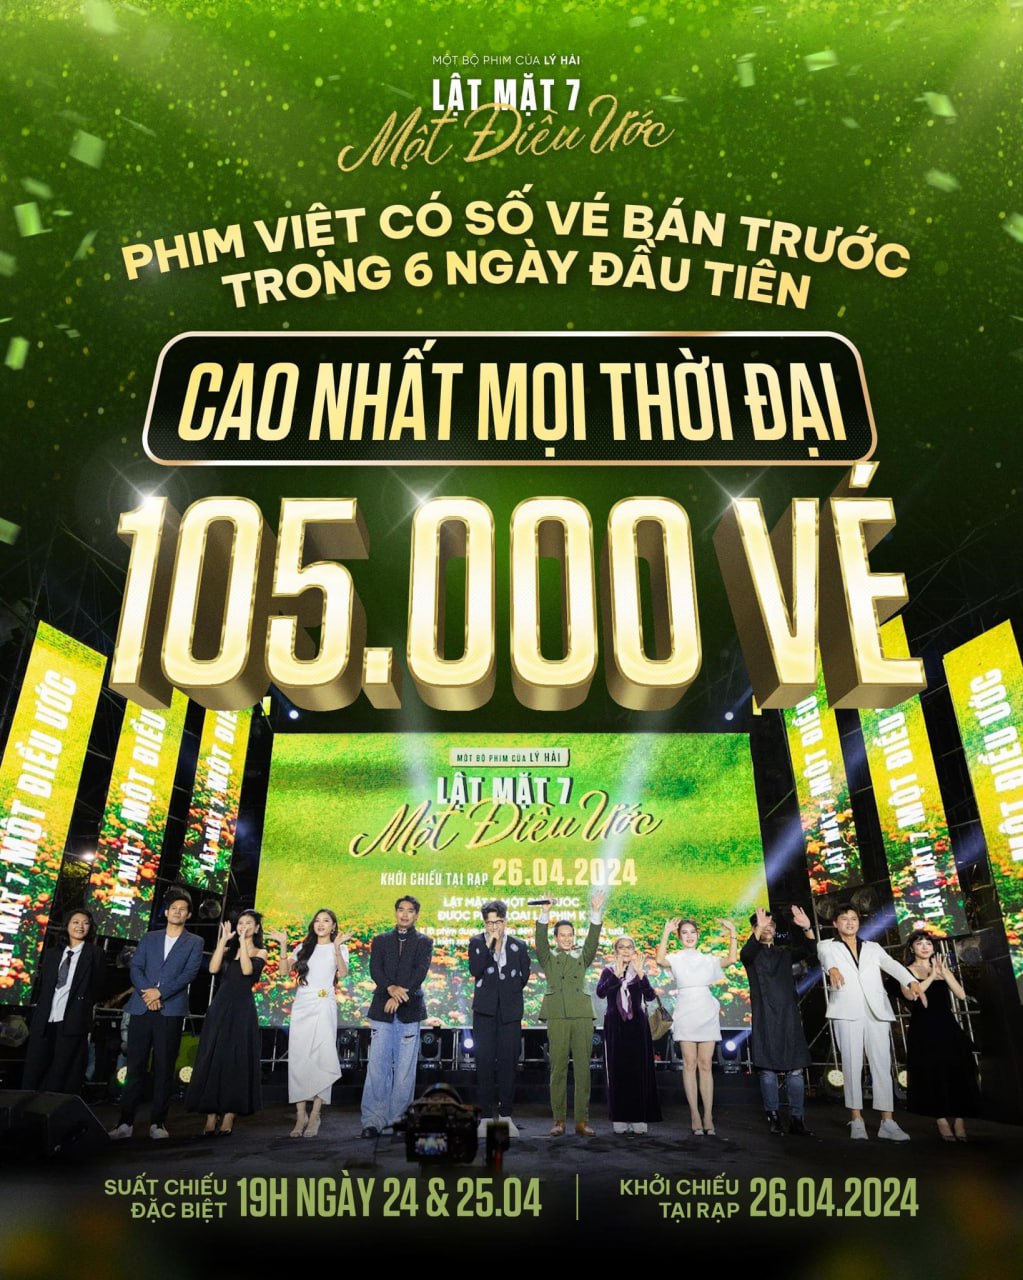 Lật Mặt 7 mới chiếu đã thống trị phòng vé Việt, doanh thu trong ngày gấp 7 lần phim 18+ của Thái Hòa- Ảnh 1.